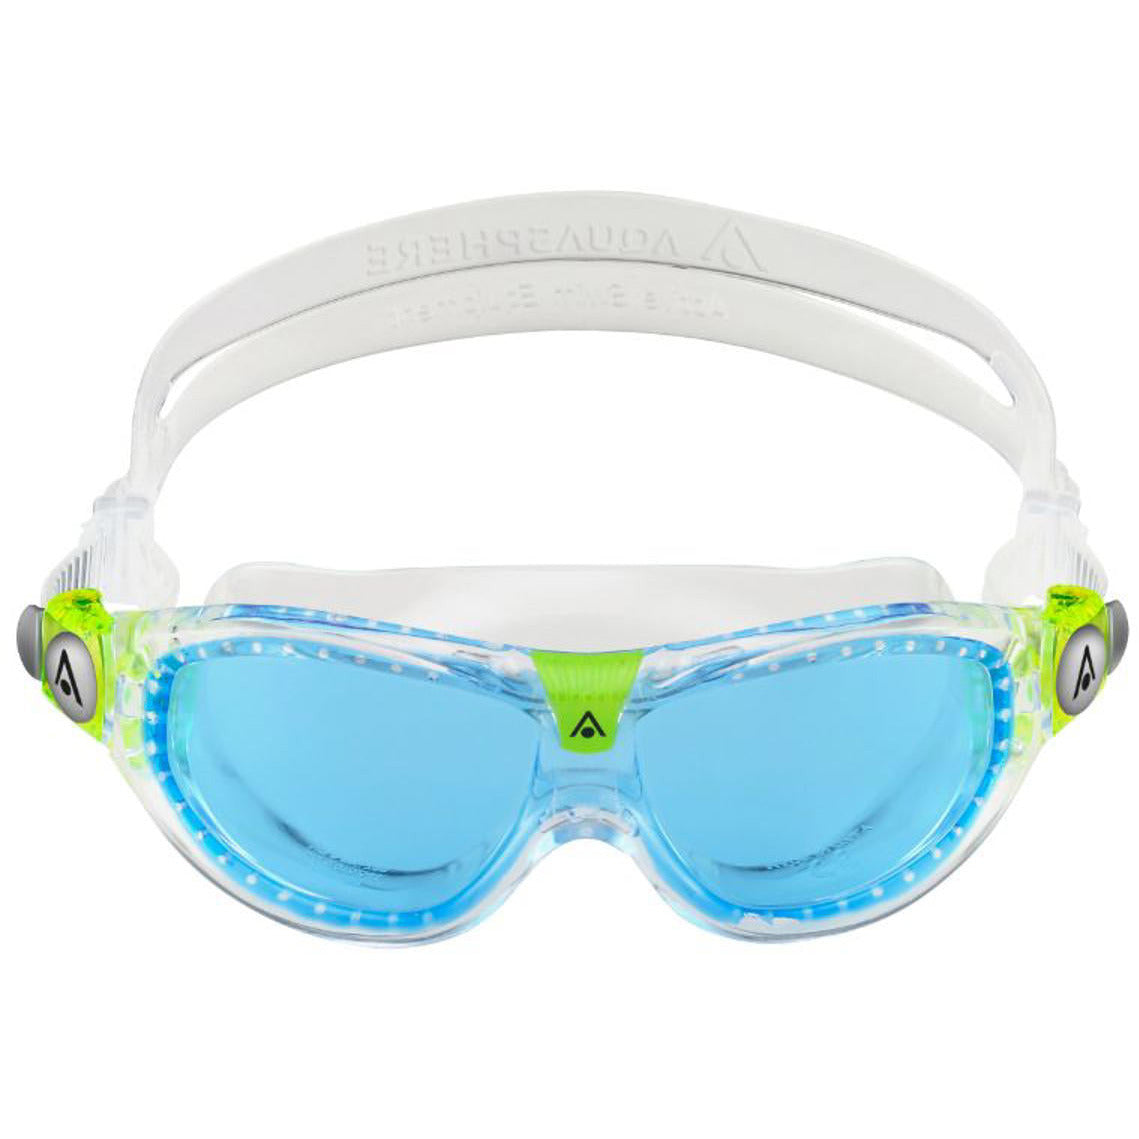 Se Aquasphere "Seal Kid 2" Svømmebriller til børn +3år - (Transparent m. blåtonede linser) hos Sandlegetøj.dk